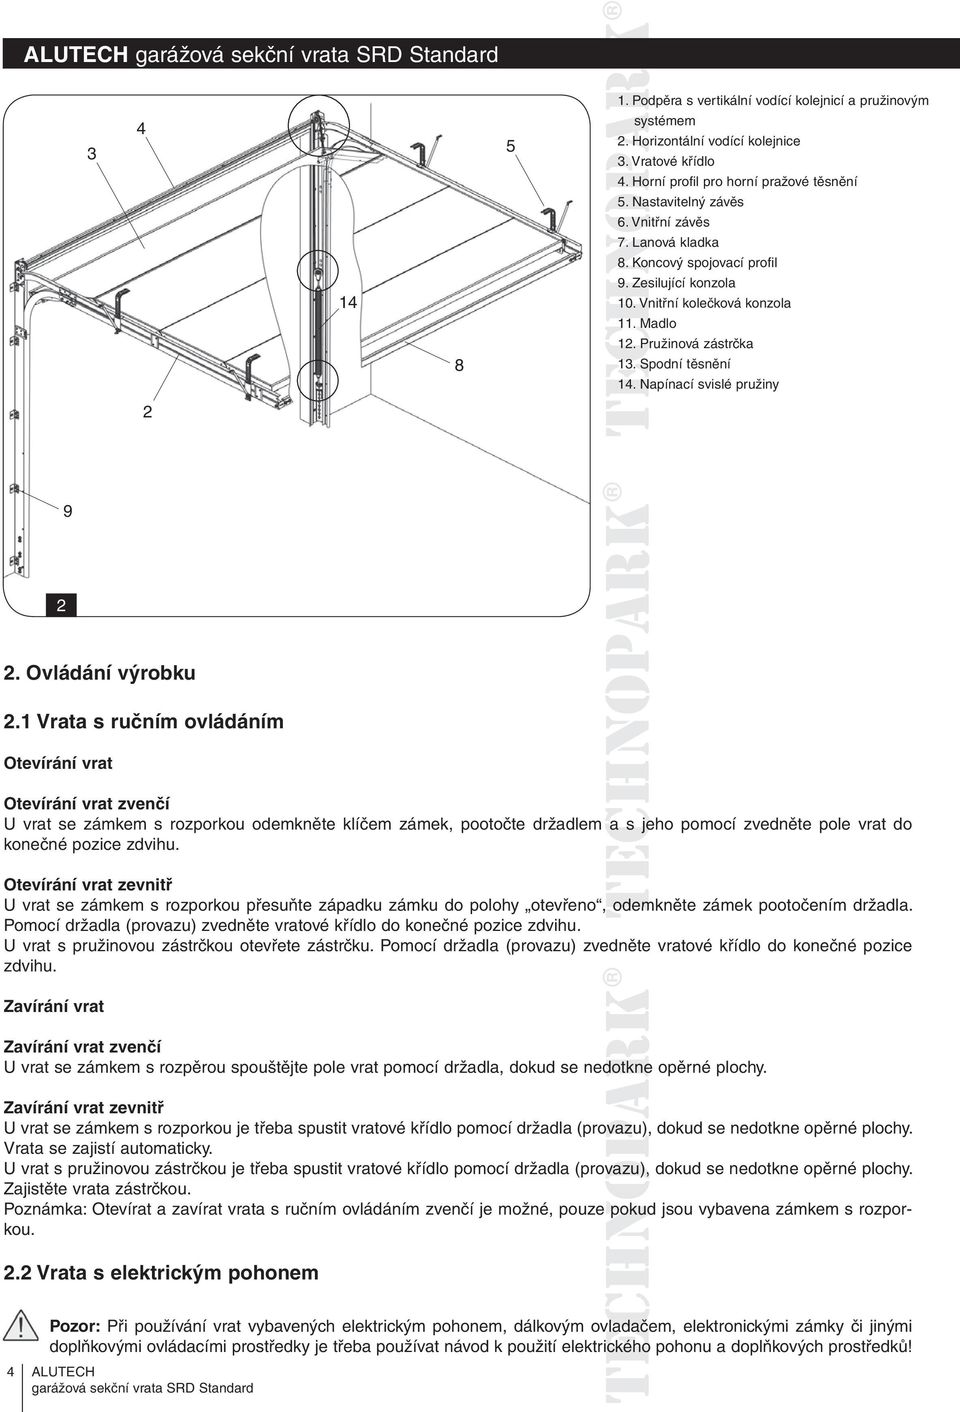 ALUTECH. Garážová sekční vrata SRD Standard - PDF Free Download